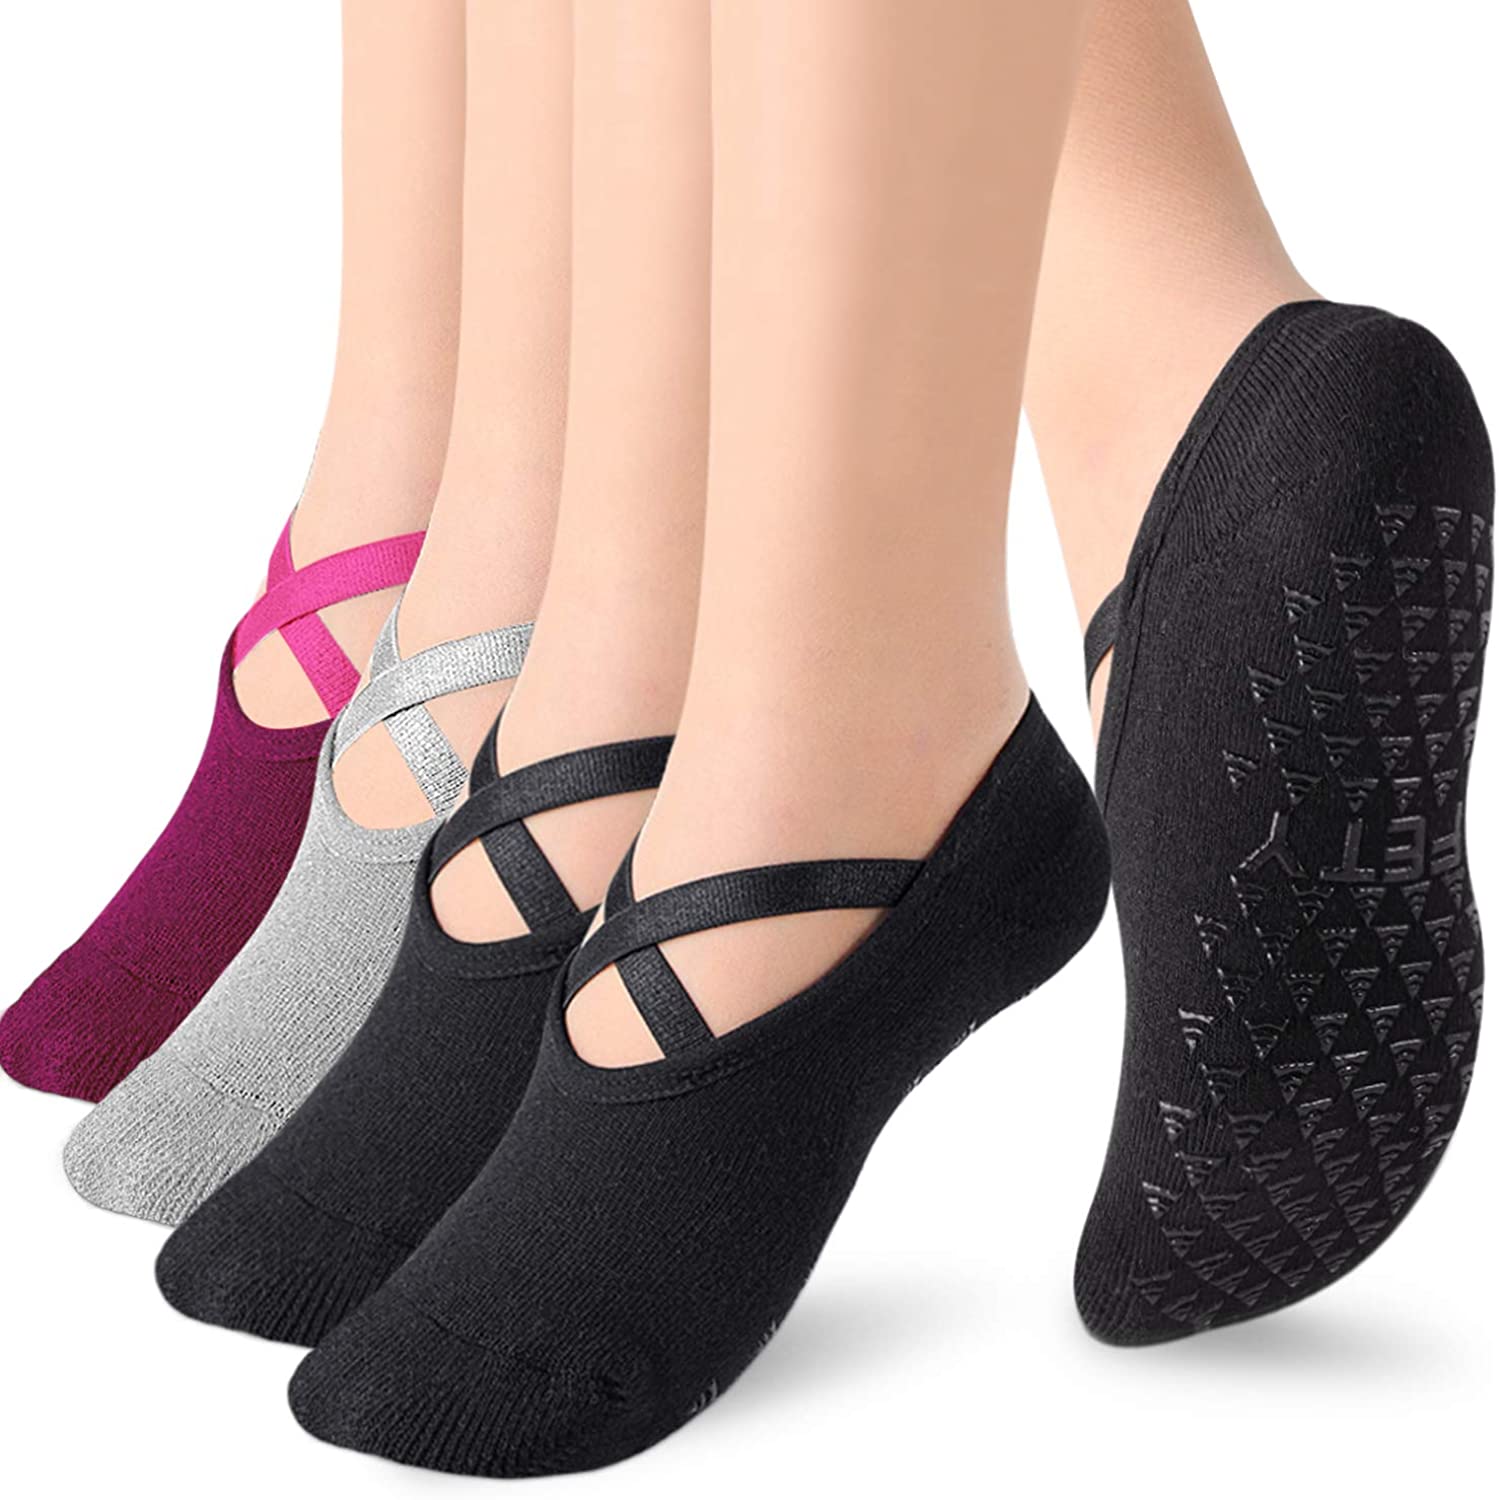 Calcetines de yoga con empuñaduras para mujeres, calcetines